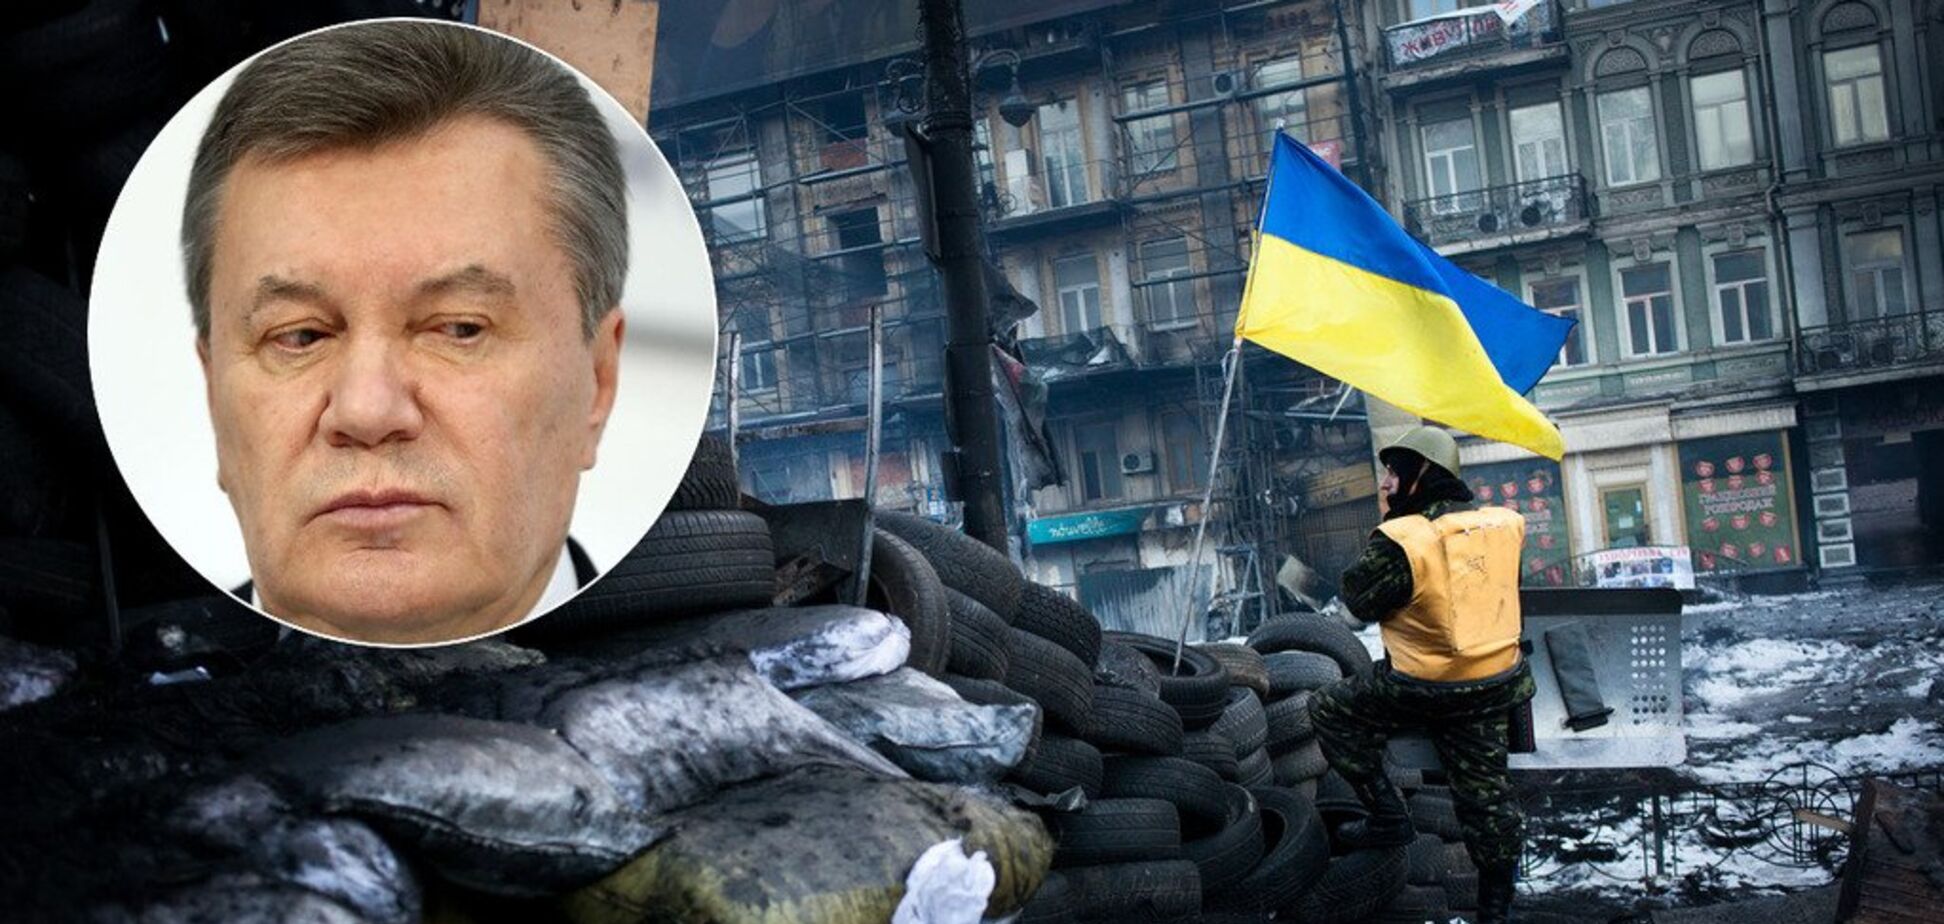 Злякався 150 снайперів? Спливла сенсація про втечу Януковича з України